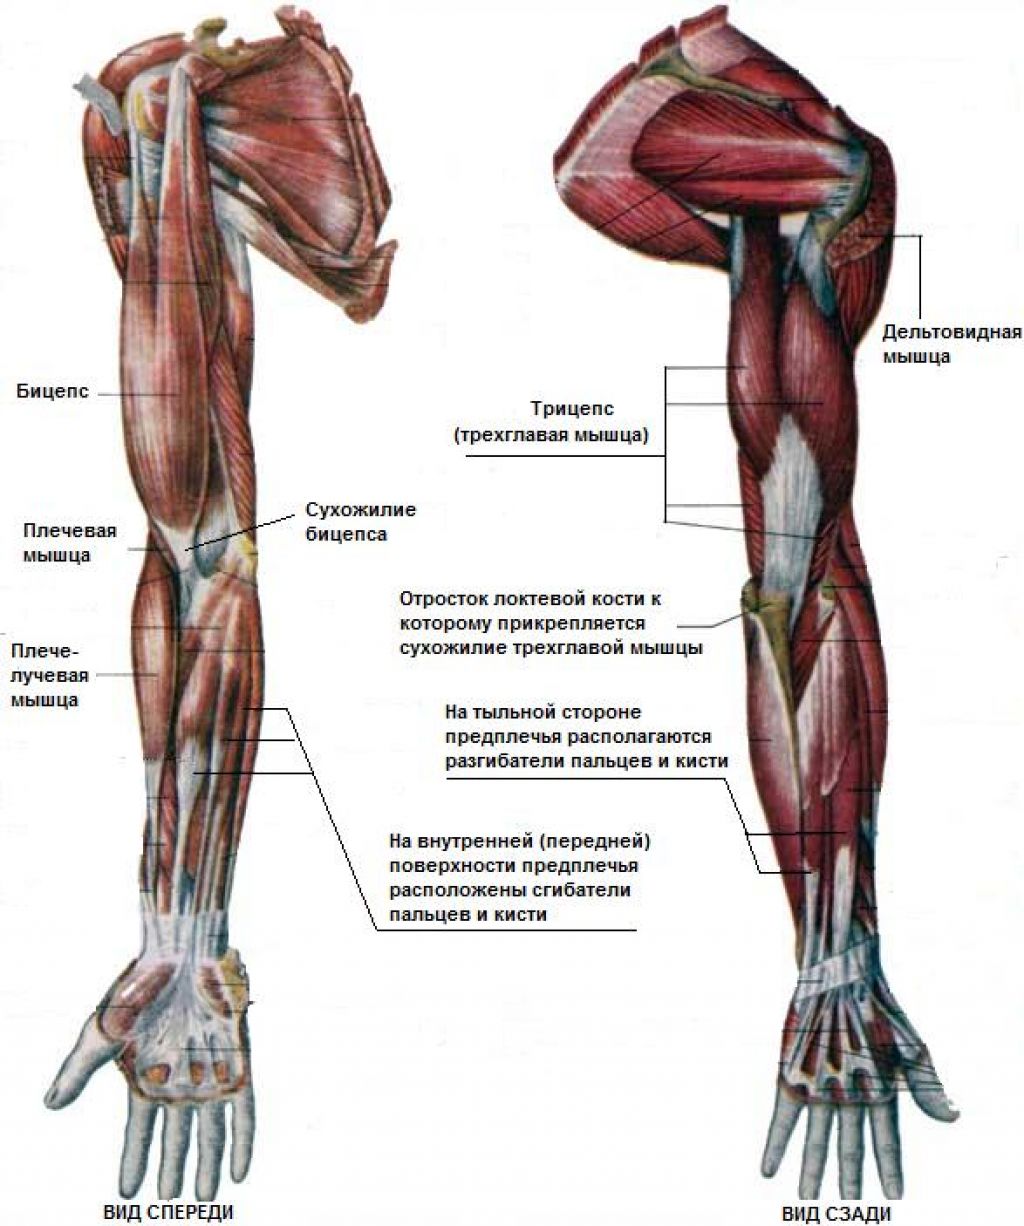 Анатомия мышц рук человека. Мышцы верхней конечности анатомия строение. Мышцы верхней конечности анатомия вид спереди. Мышцы руки сгибатели анатомия. Анатомия сухожилия двуглавой мышцы.